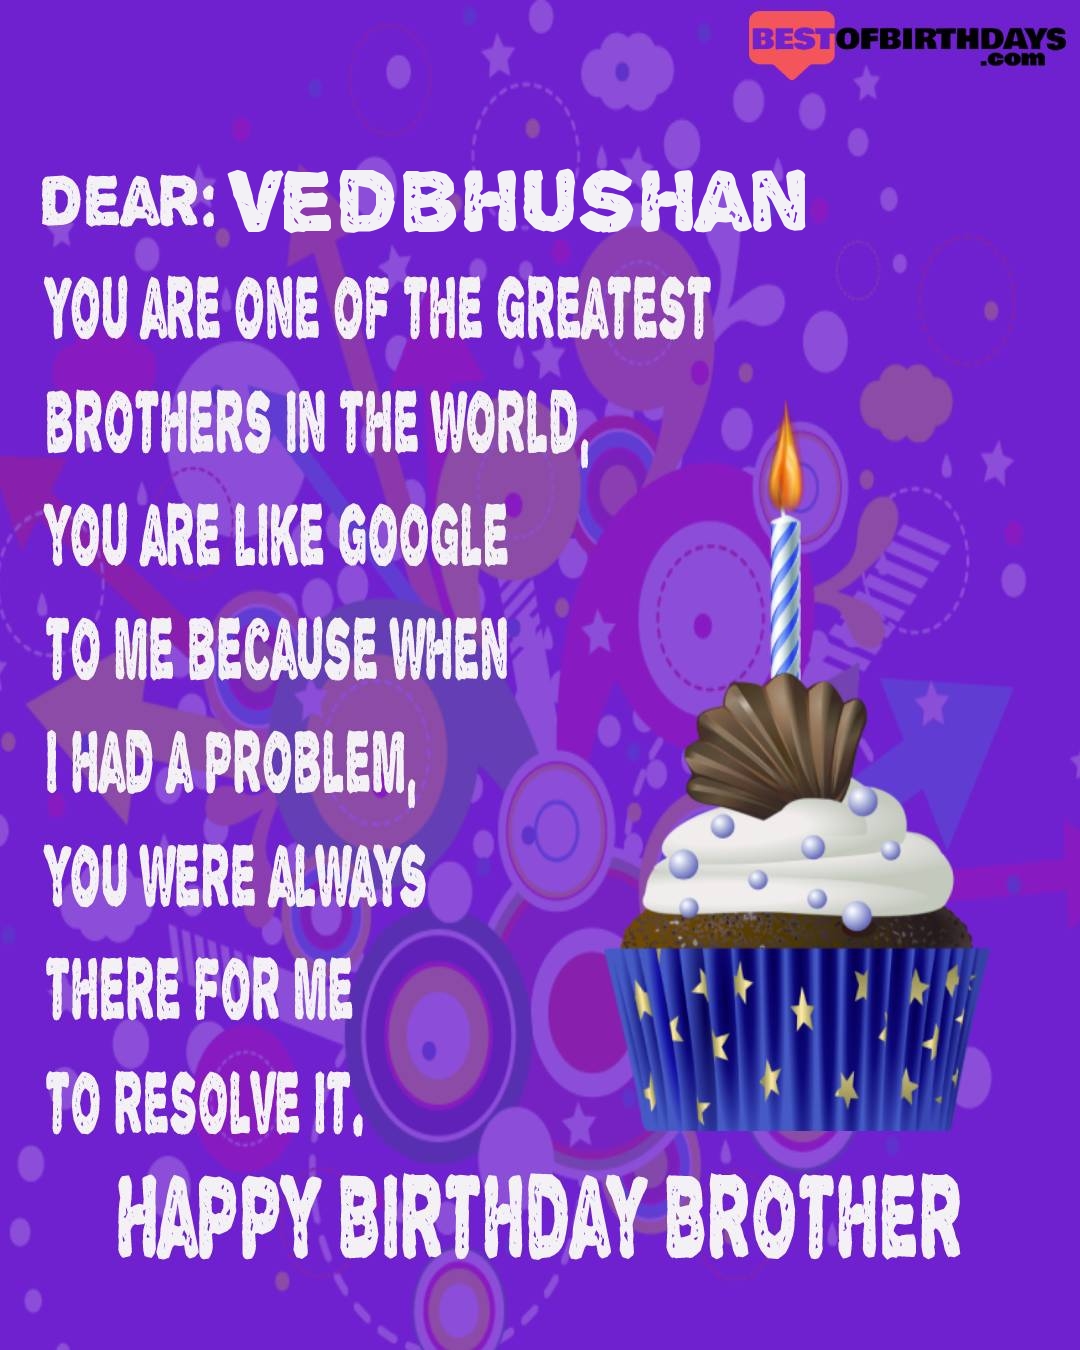 Happy birthday vedbhushan bhai brother bro